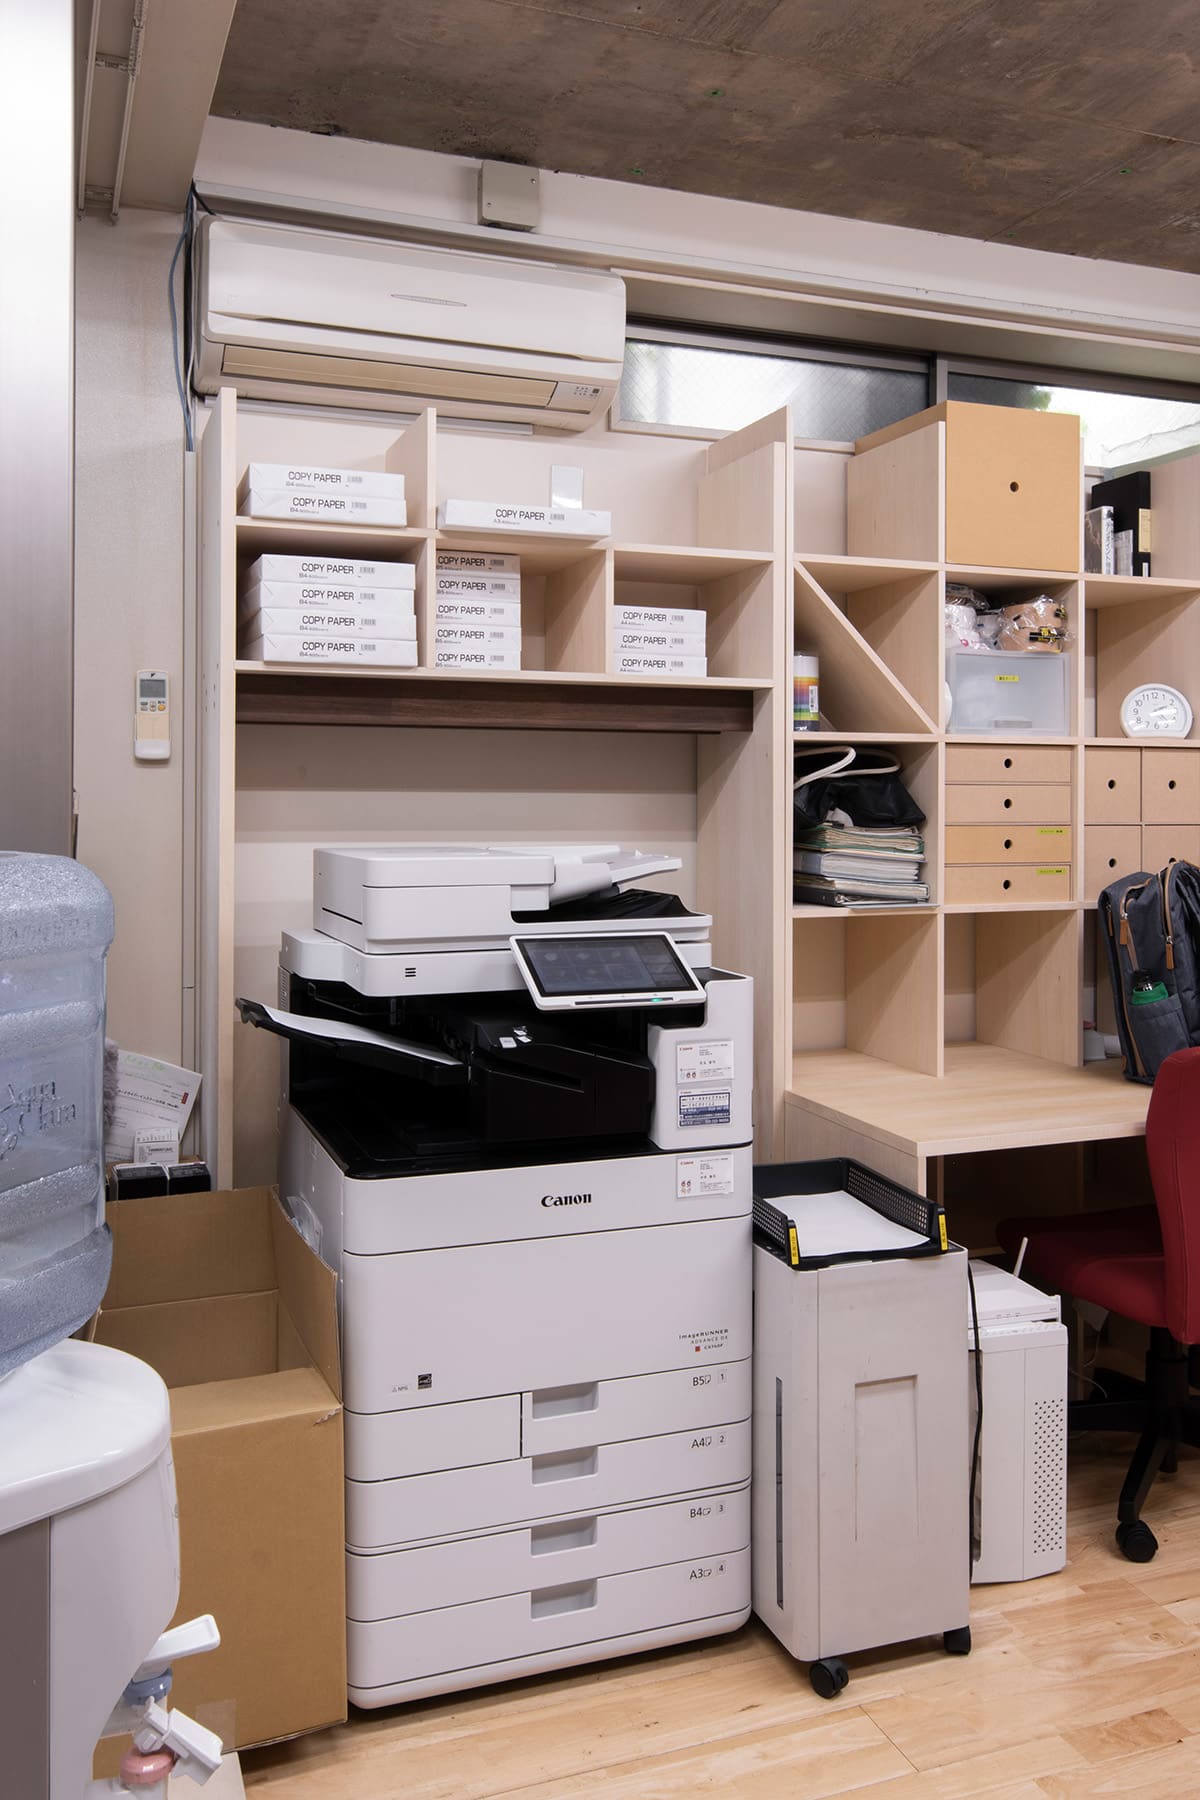 【File 764】10年を経たオフィスに増設する - Shelf カウンター付き本棚 - マルゲリータお客様事例